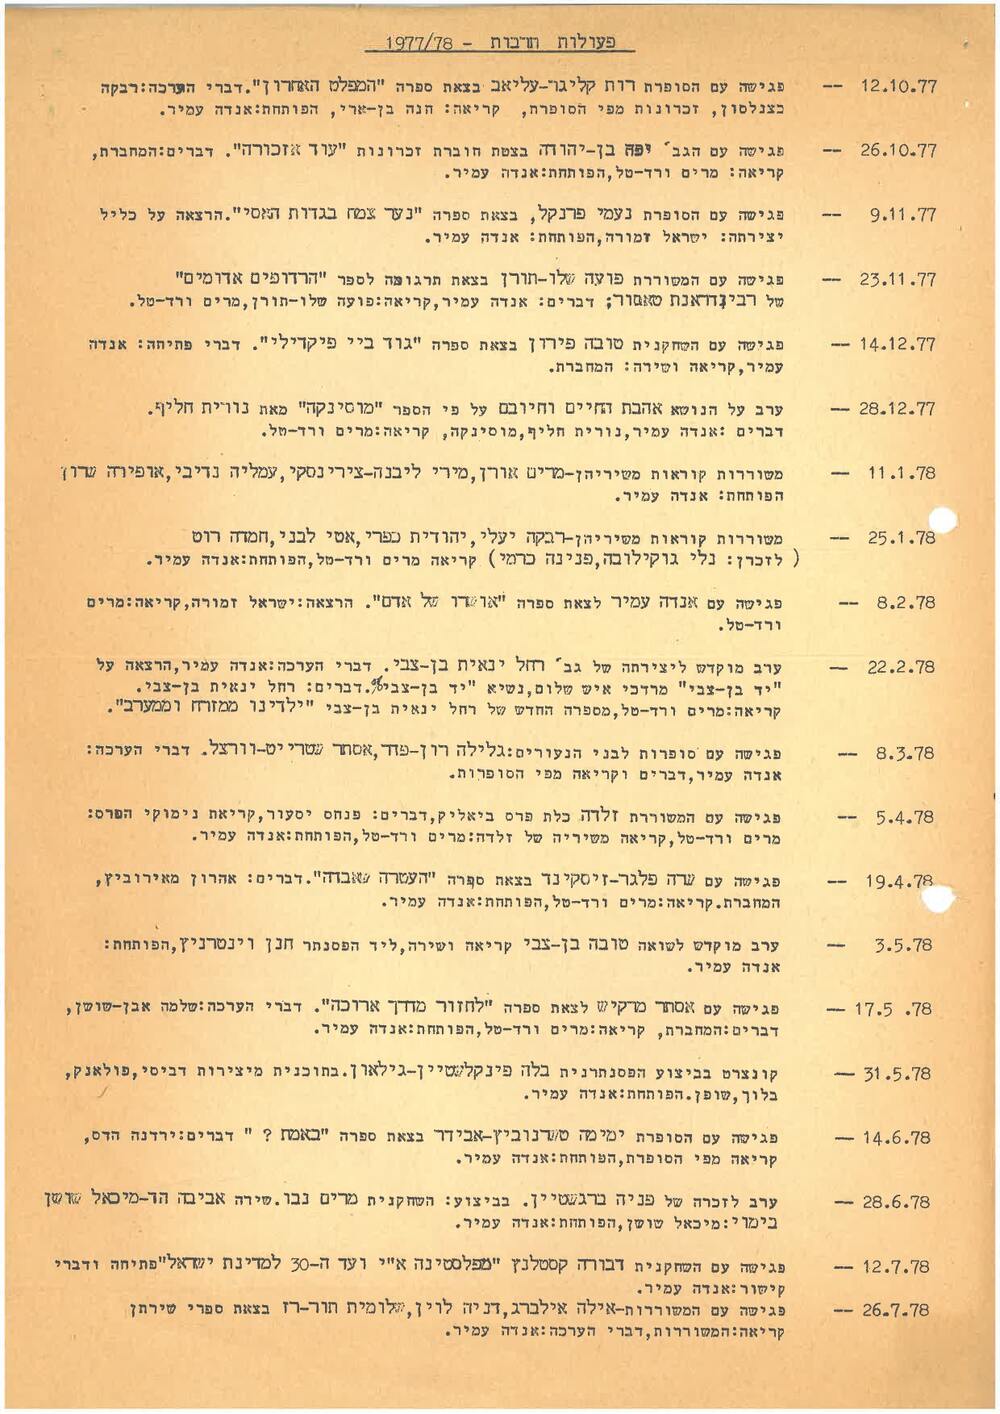 לוח אירועים ב״בית האשה״ שנת 1977-78